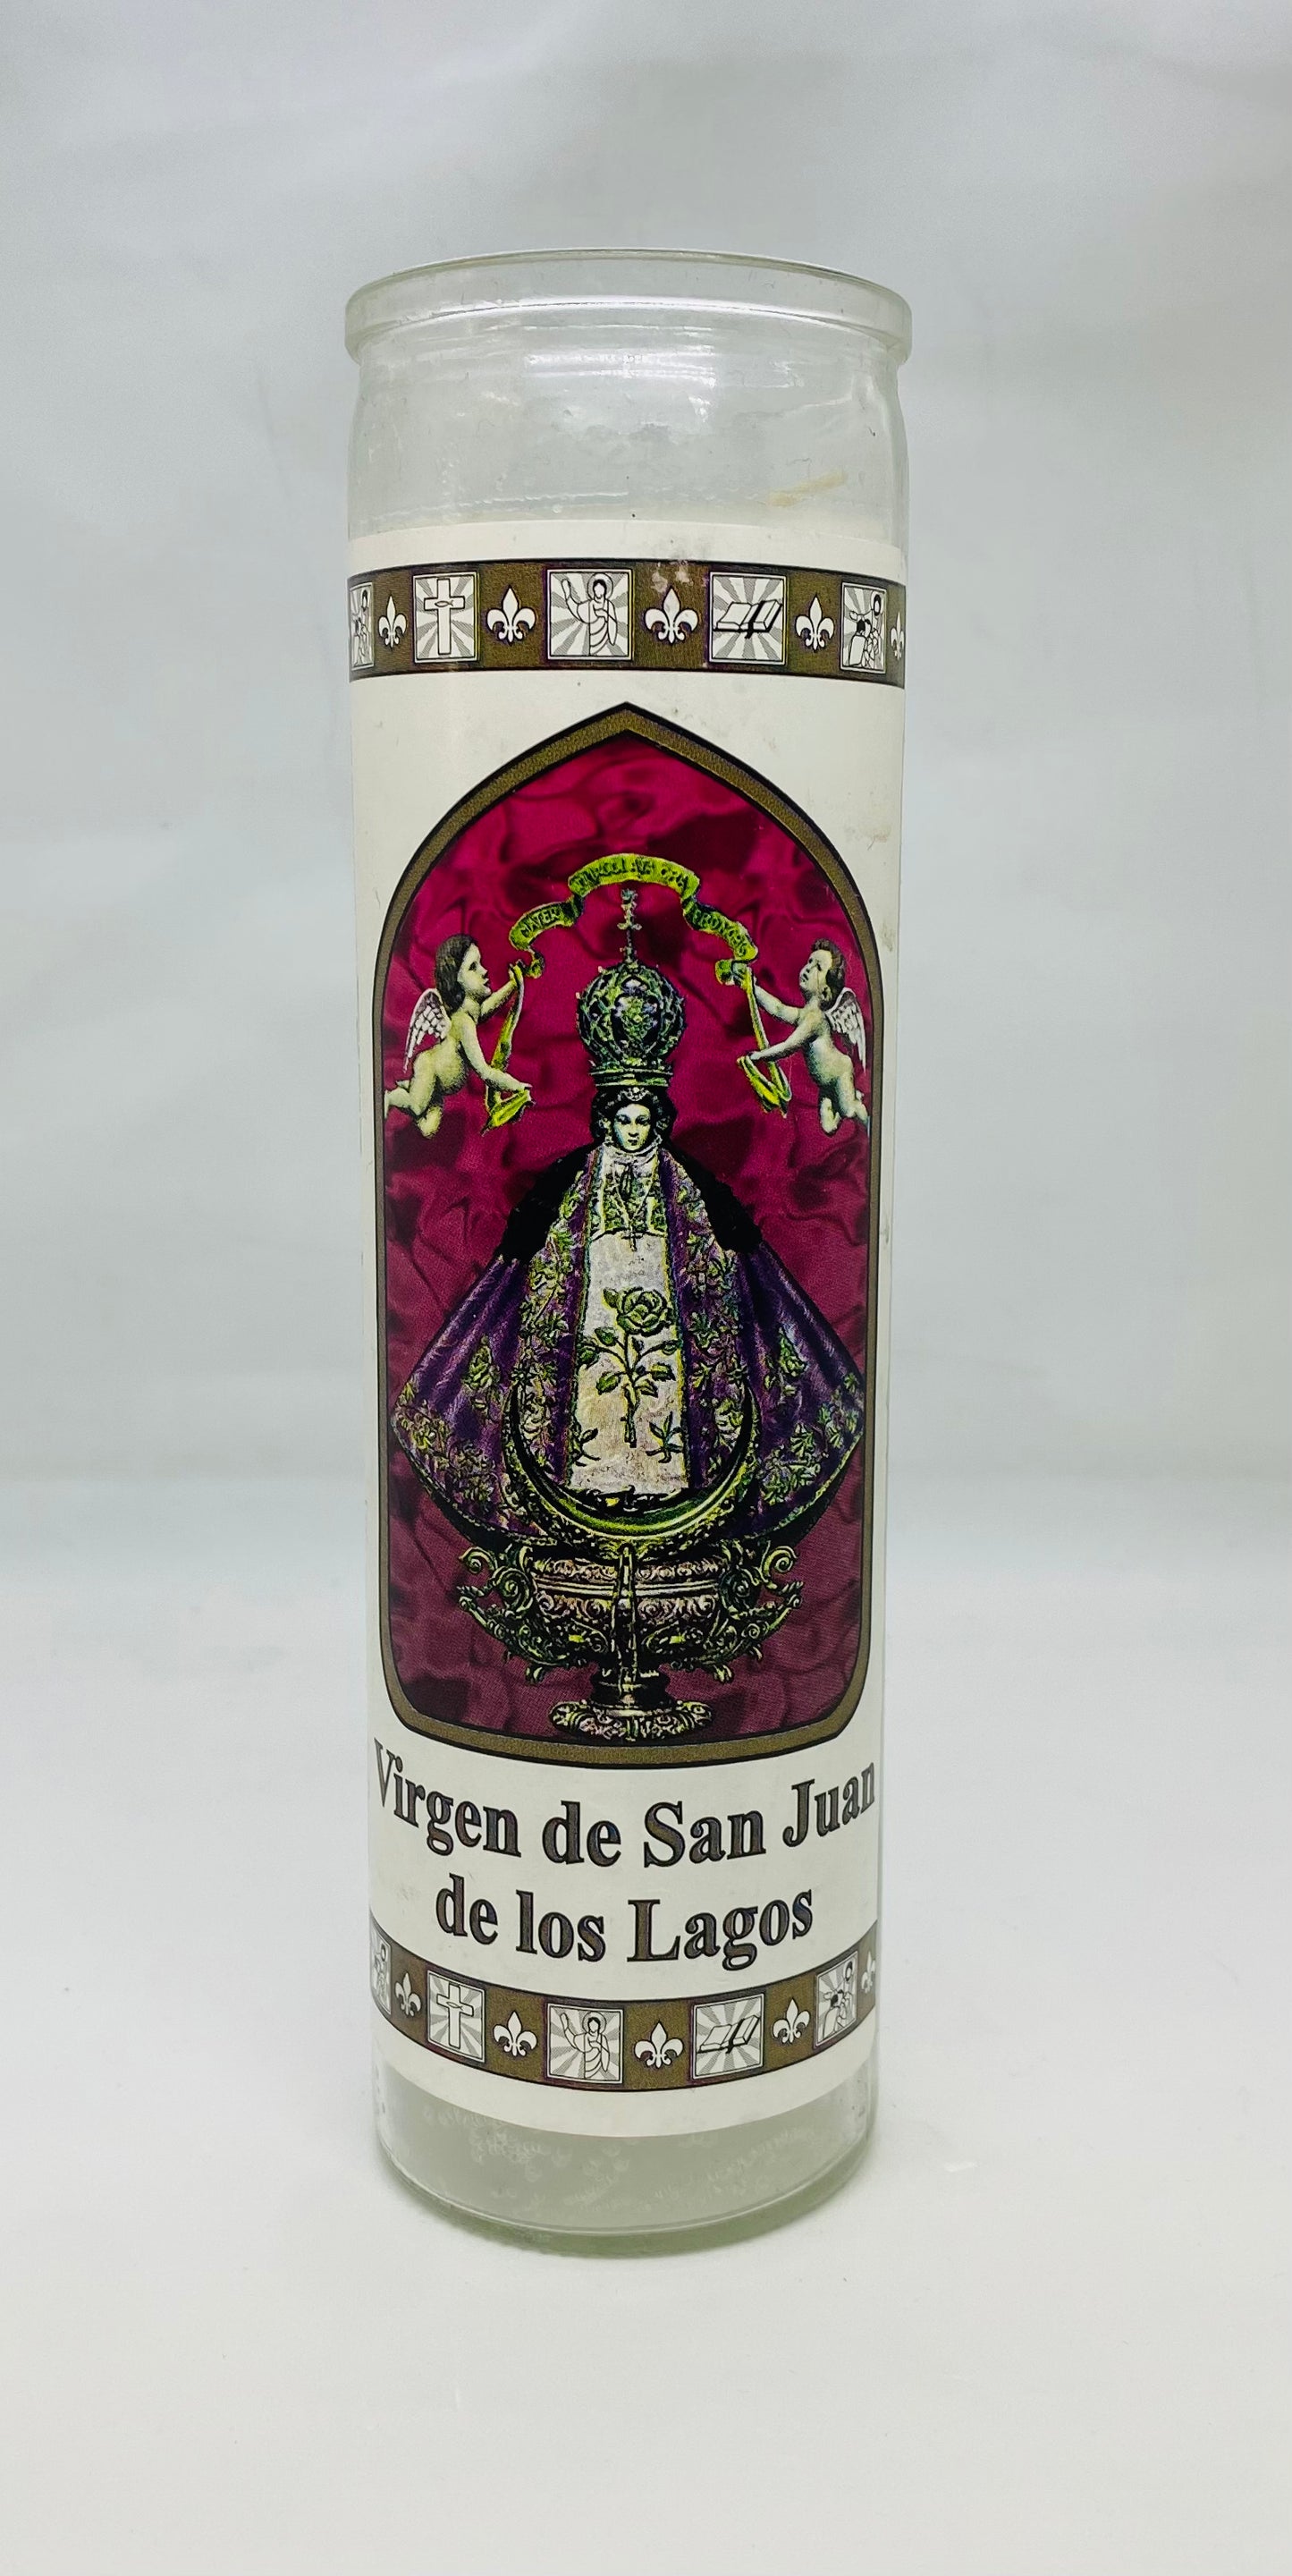 Our Lady Guadalupe with Virgen De San Juan de los Lagos